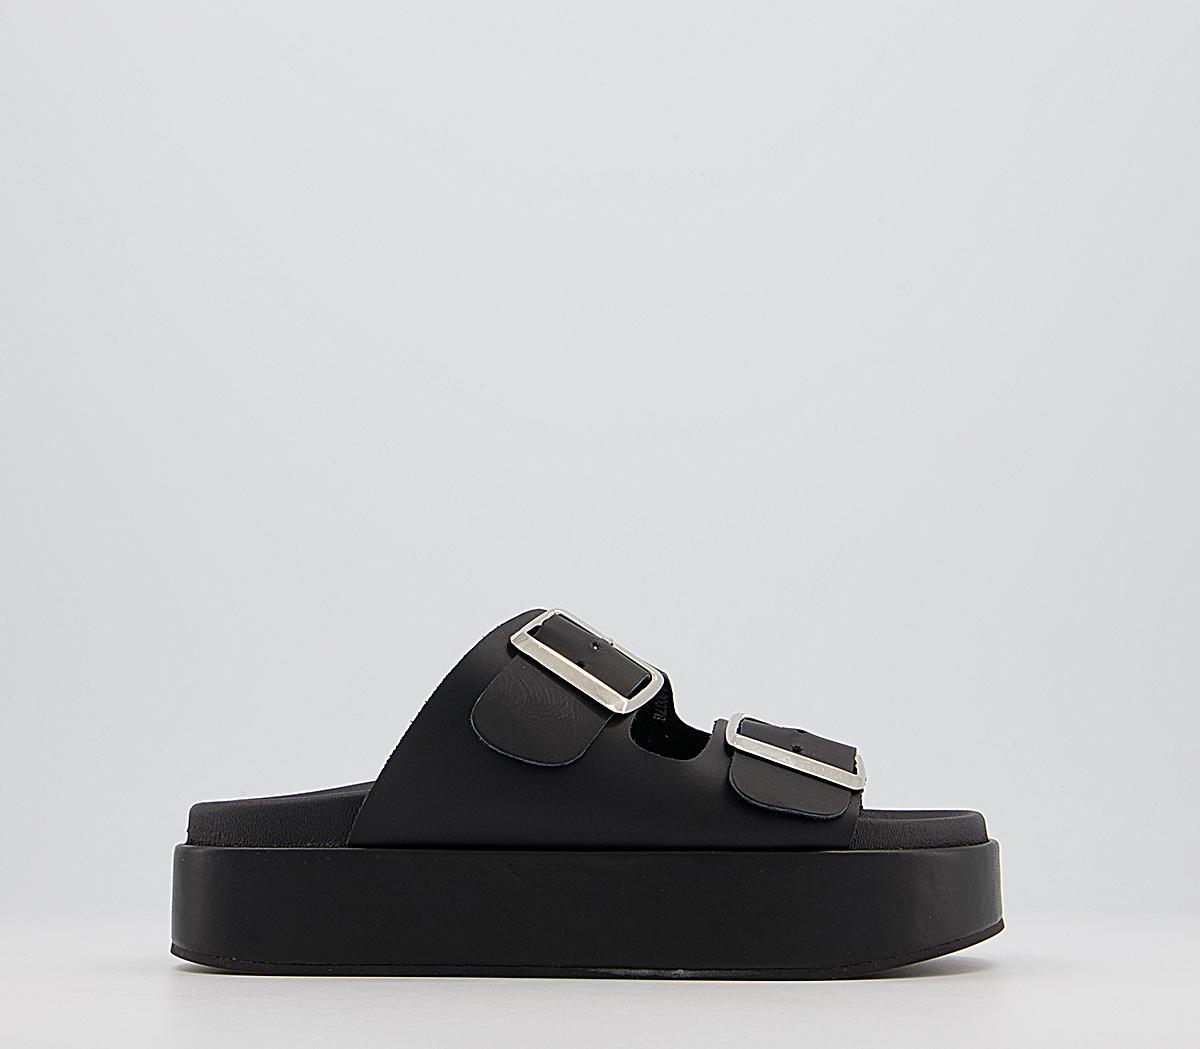 OFFICE Meditation Footbed Flatform Sandals Black Leather - Women’s Sandals